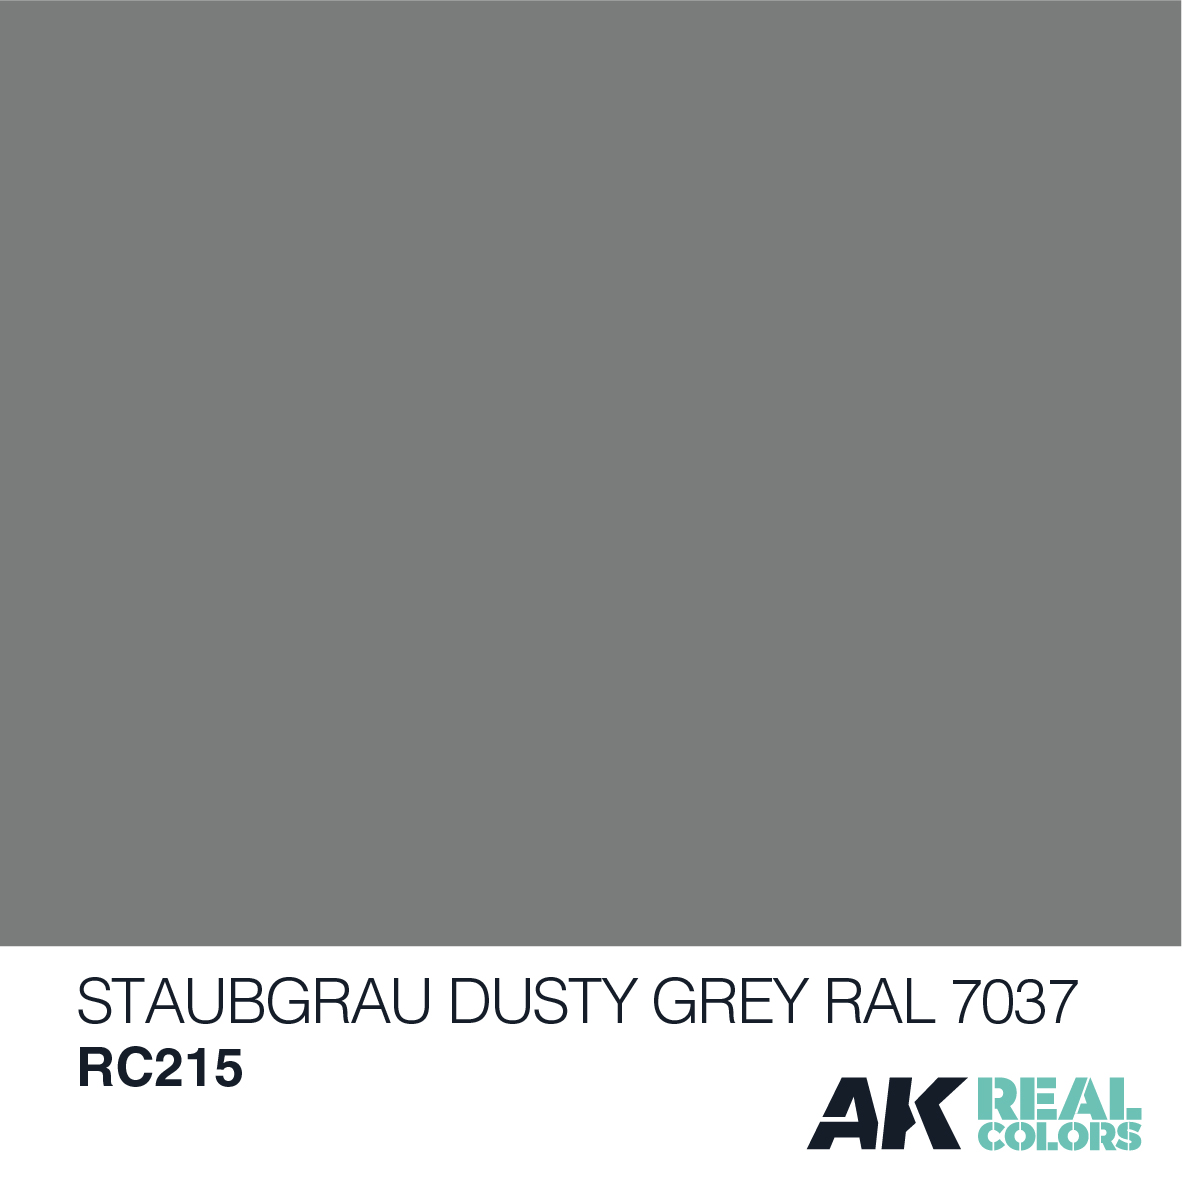 Staubgrau-Dusty Grey RAL 7037